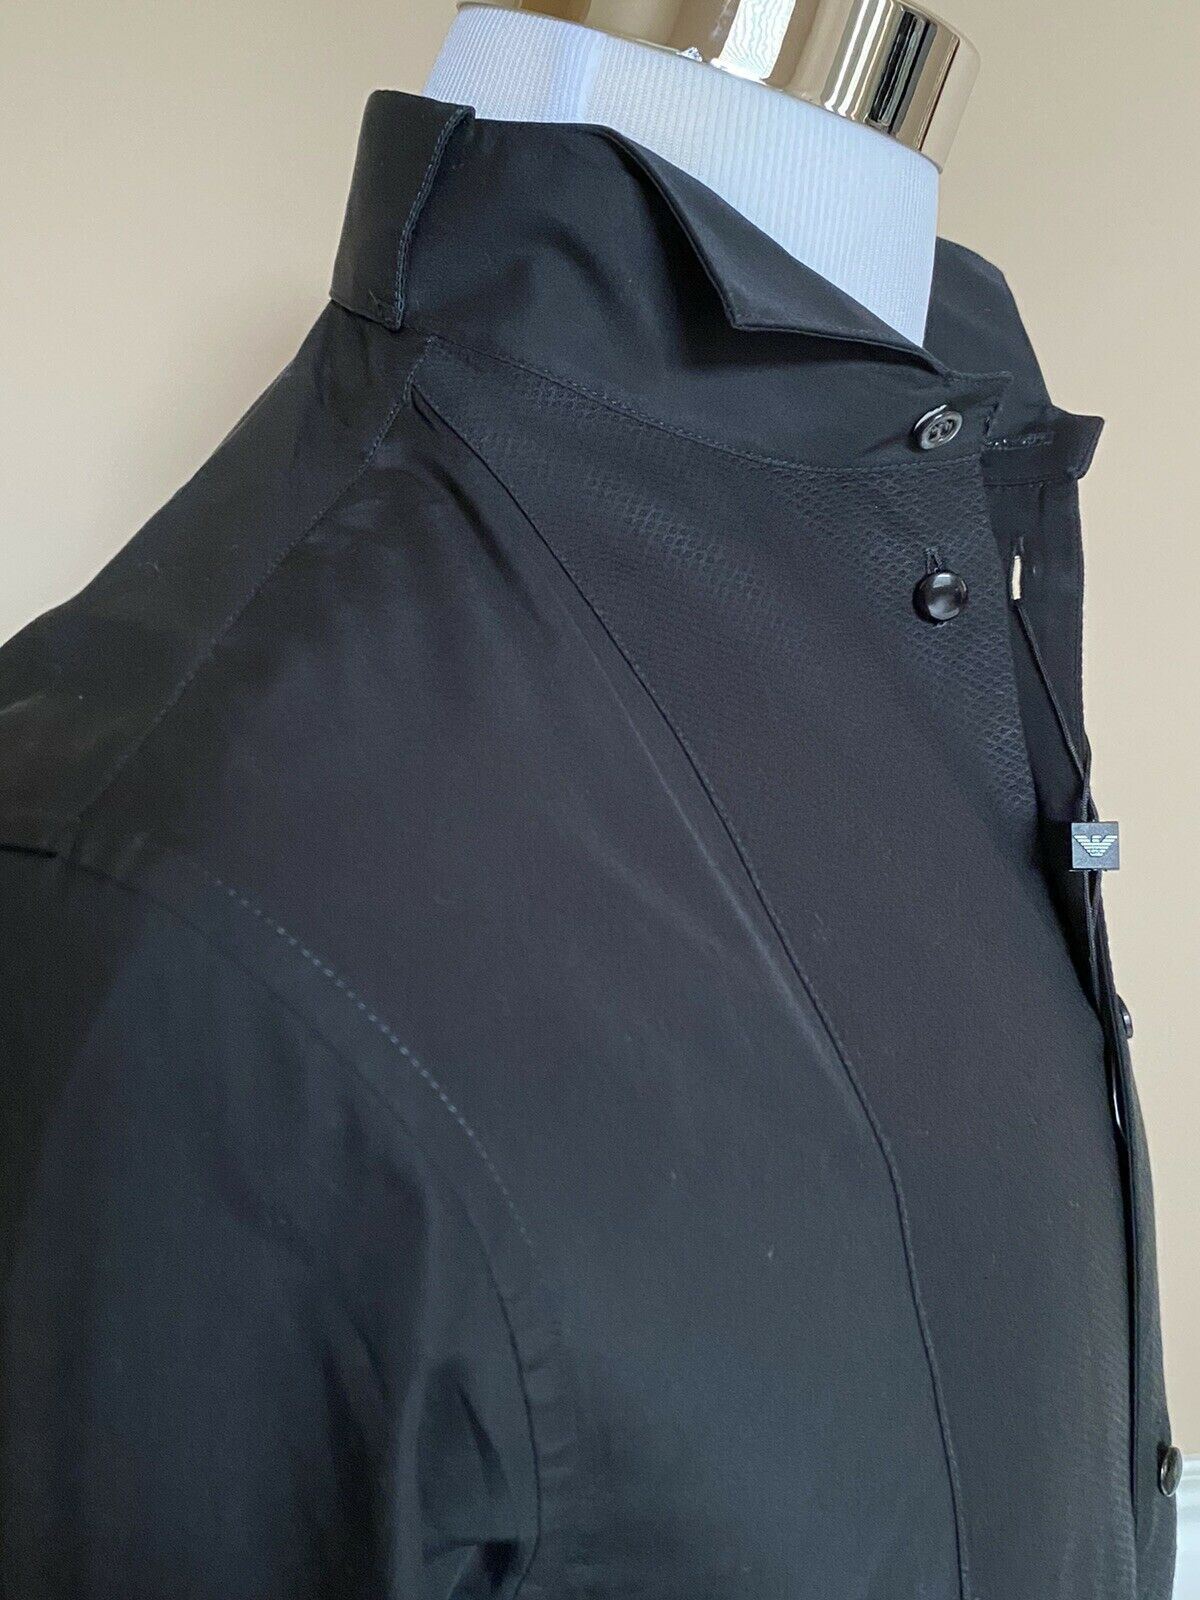 NWT $525 Emporio Armani Korean-Necked Black Dress Shirt  Size 43/17 11CS3T